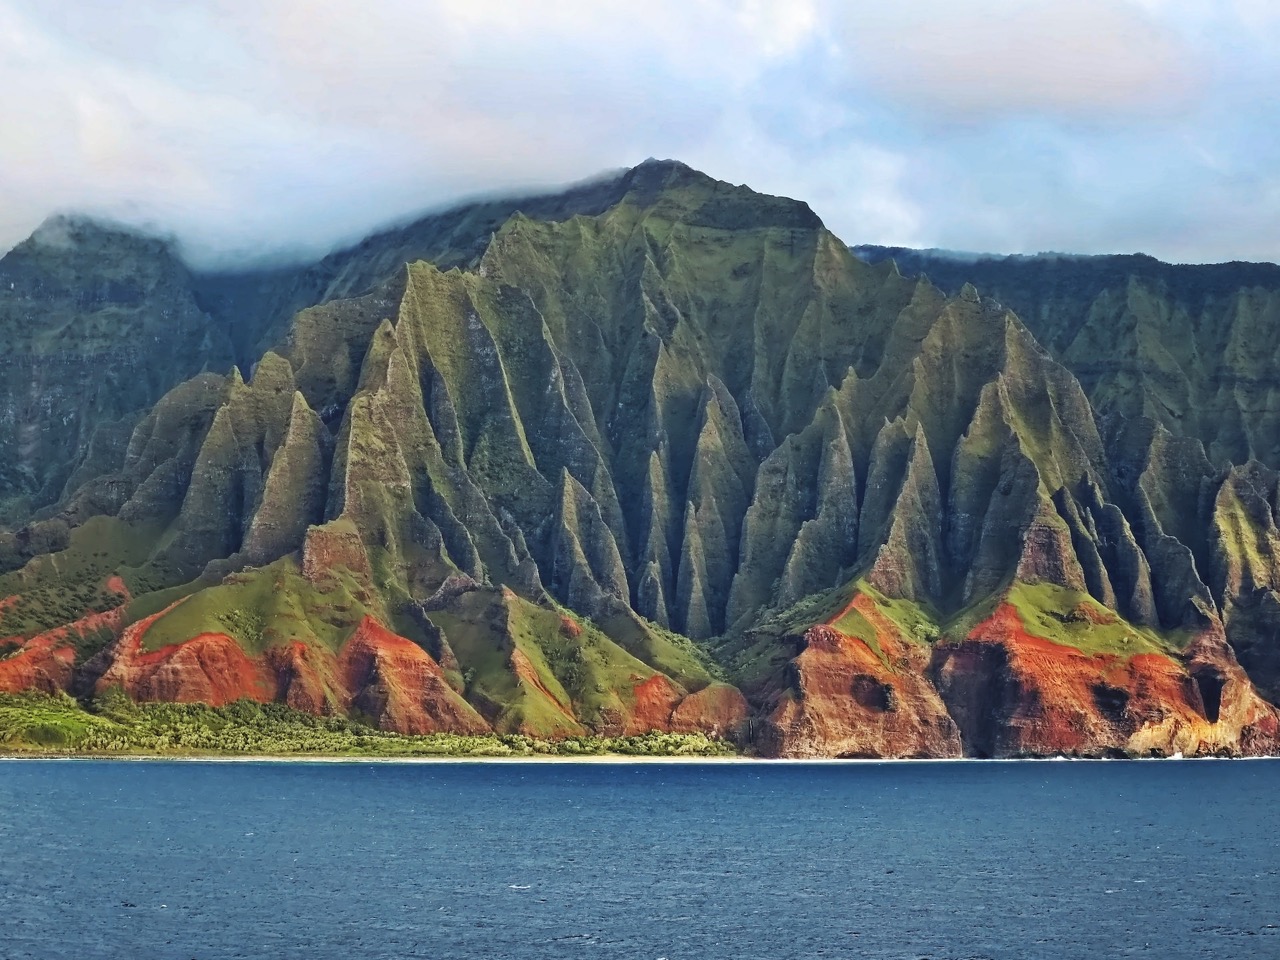 a híres na pali coast csipkézett ormai kauai szigetén